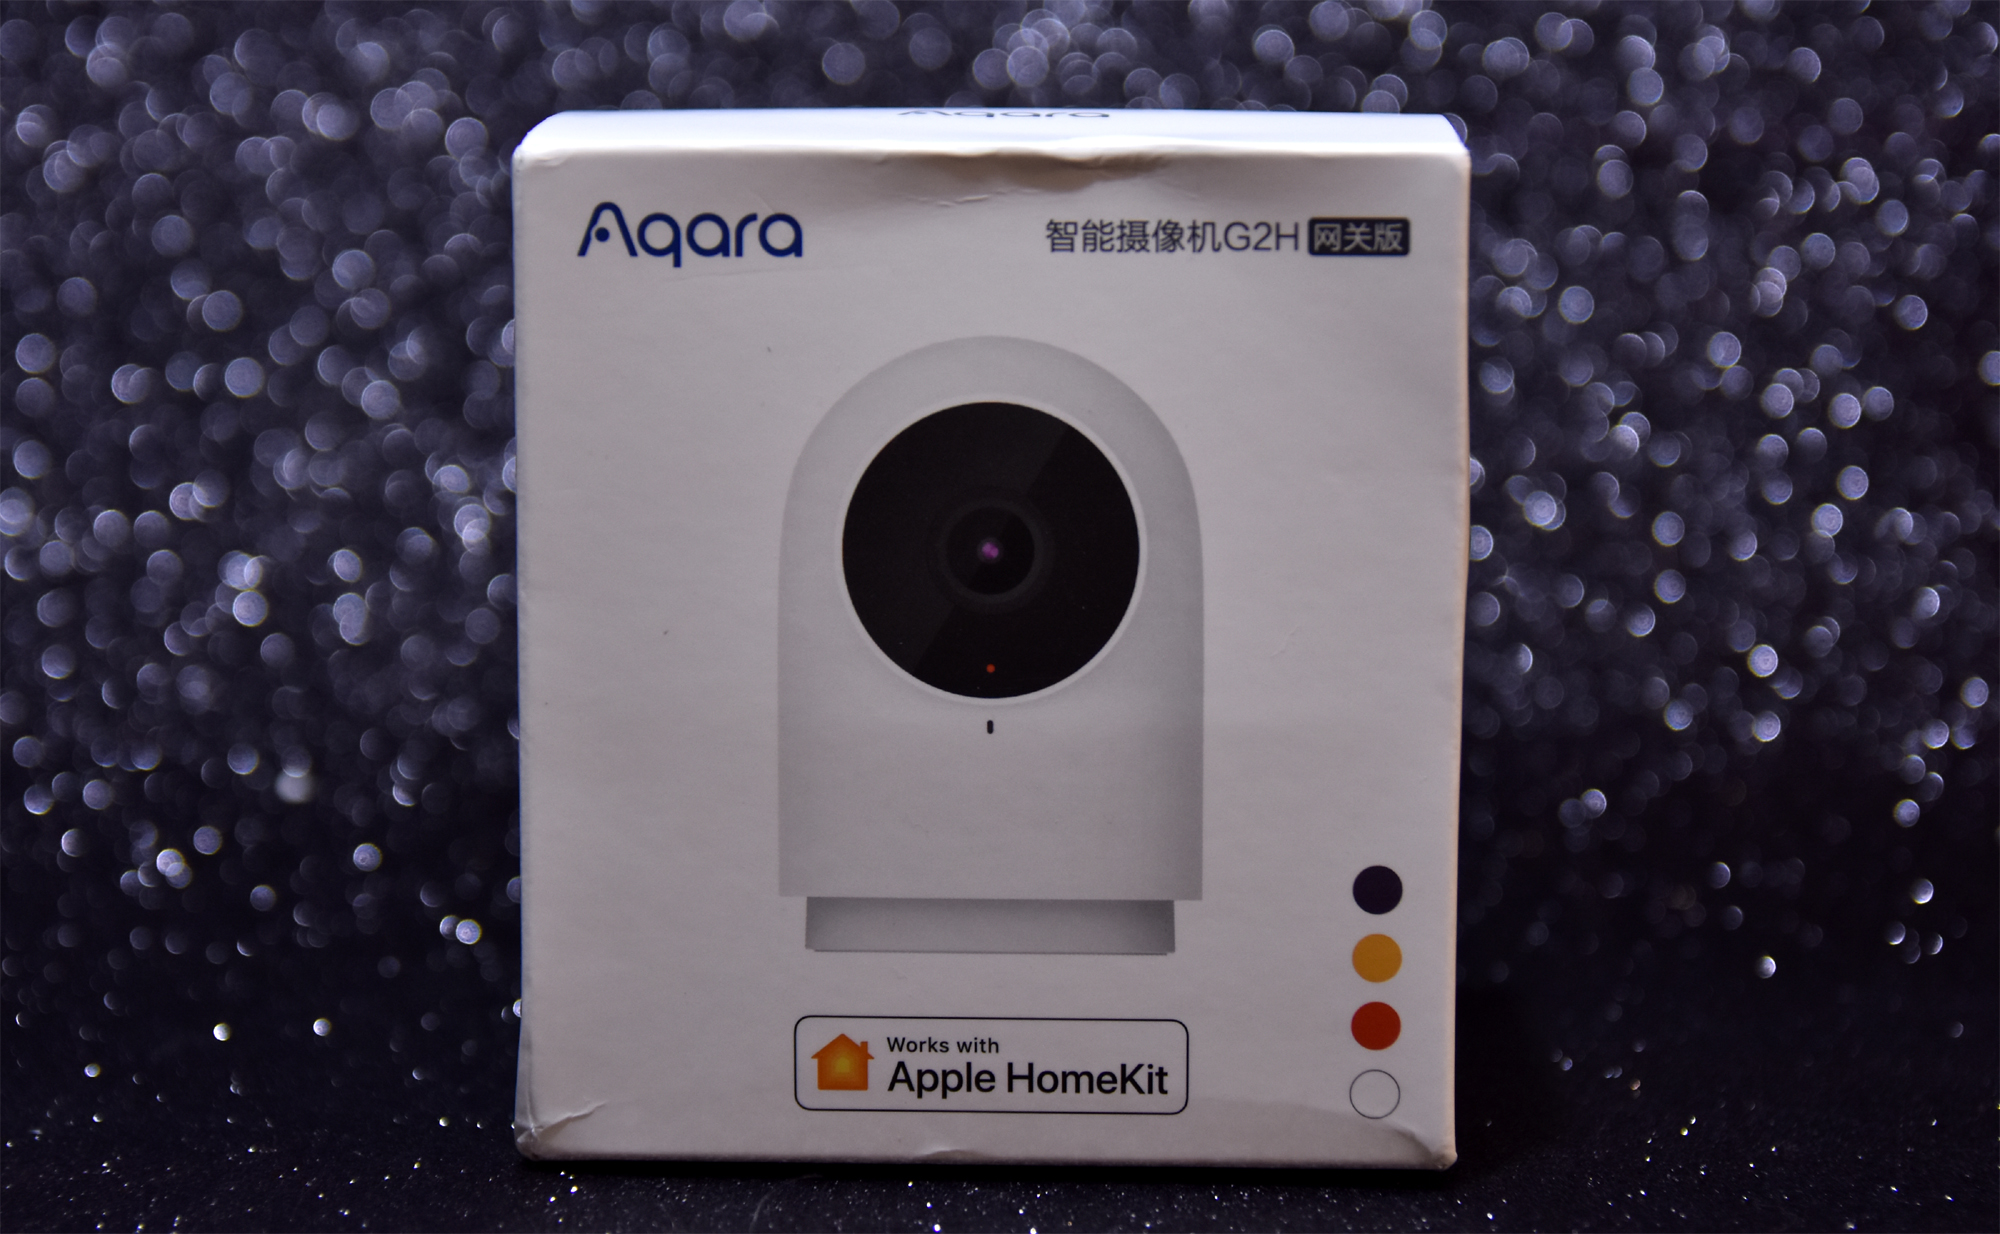 呆萌可爱小卫士 Aqara 智能摄像机 G2H优科技开箱体验